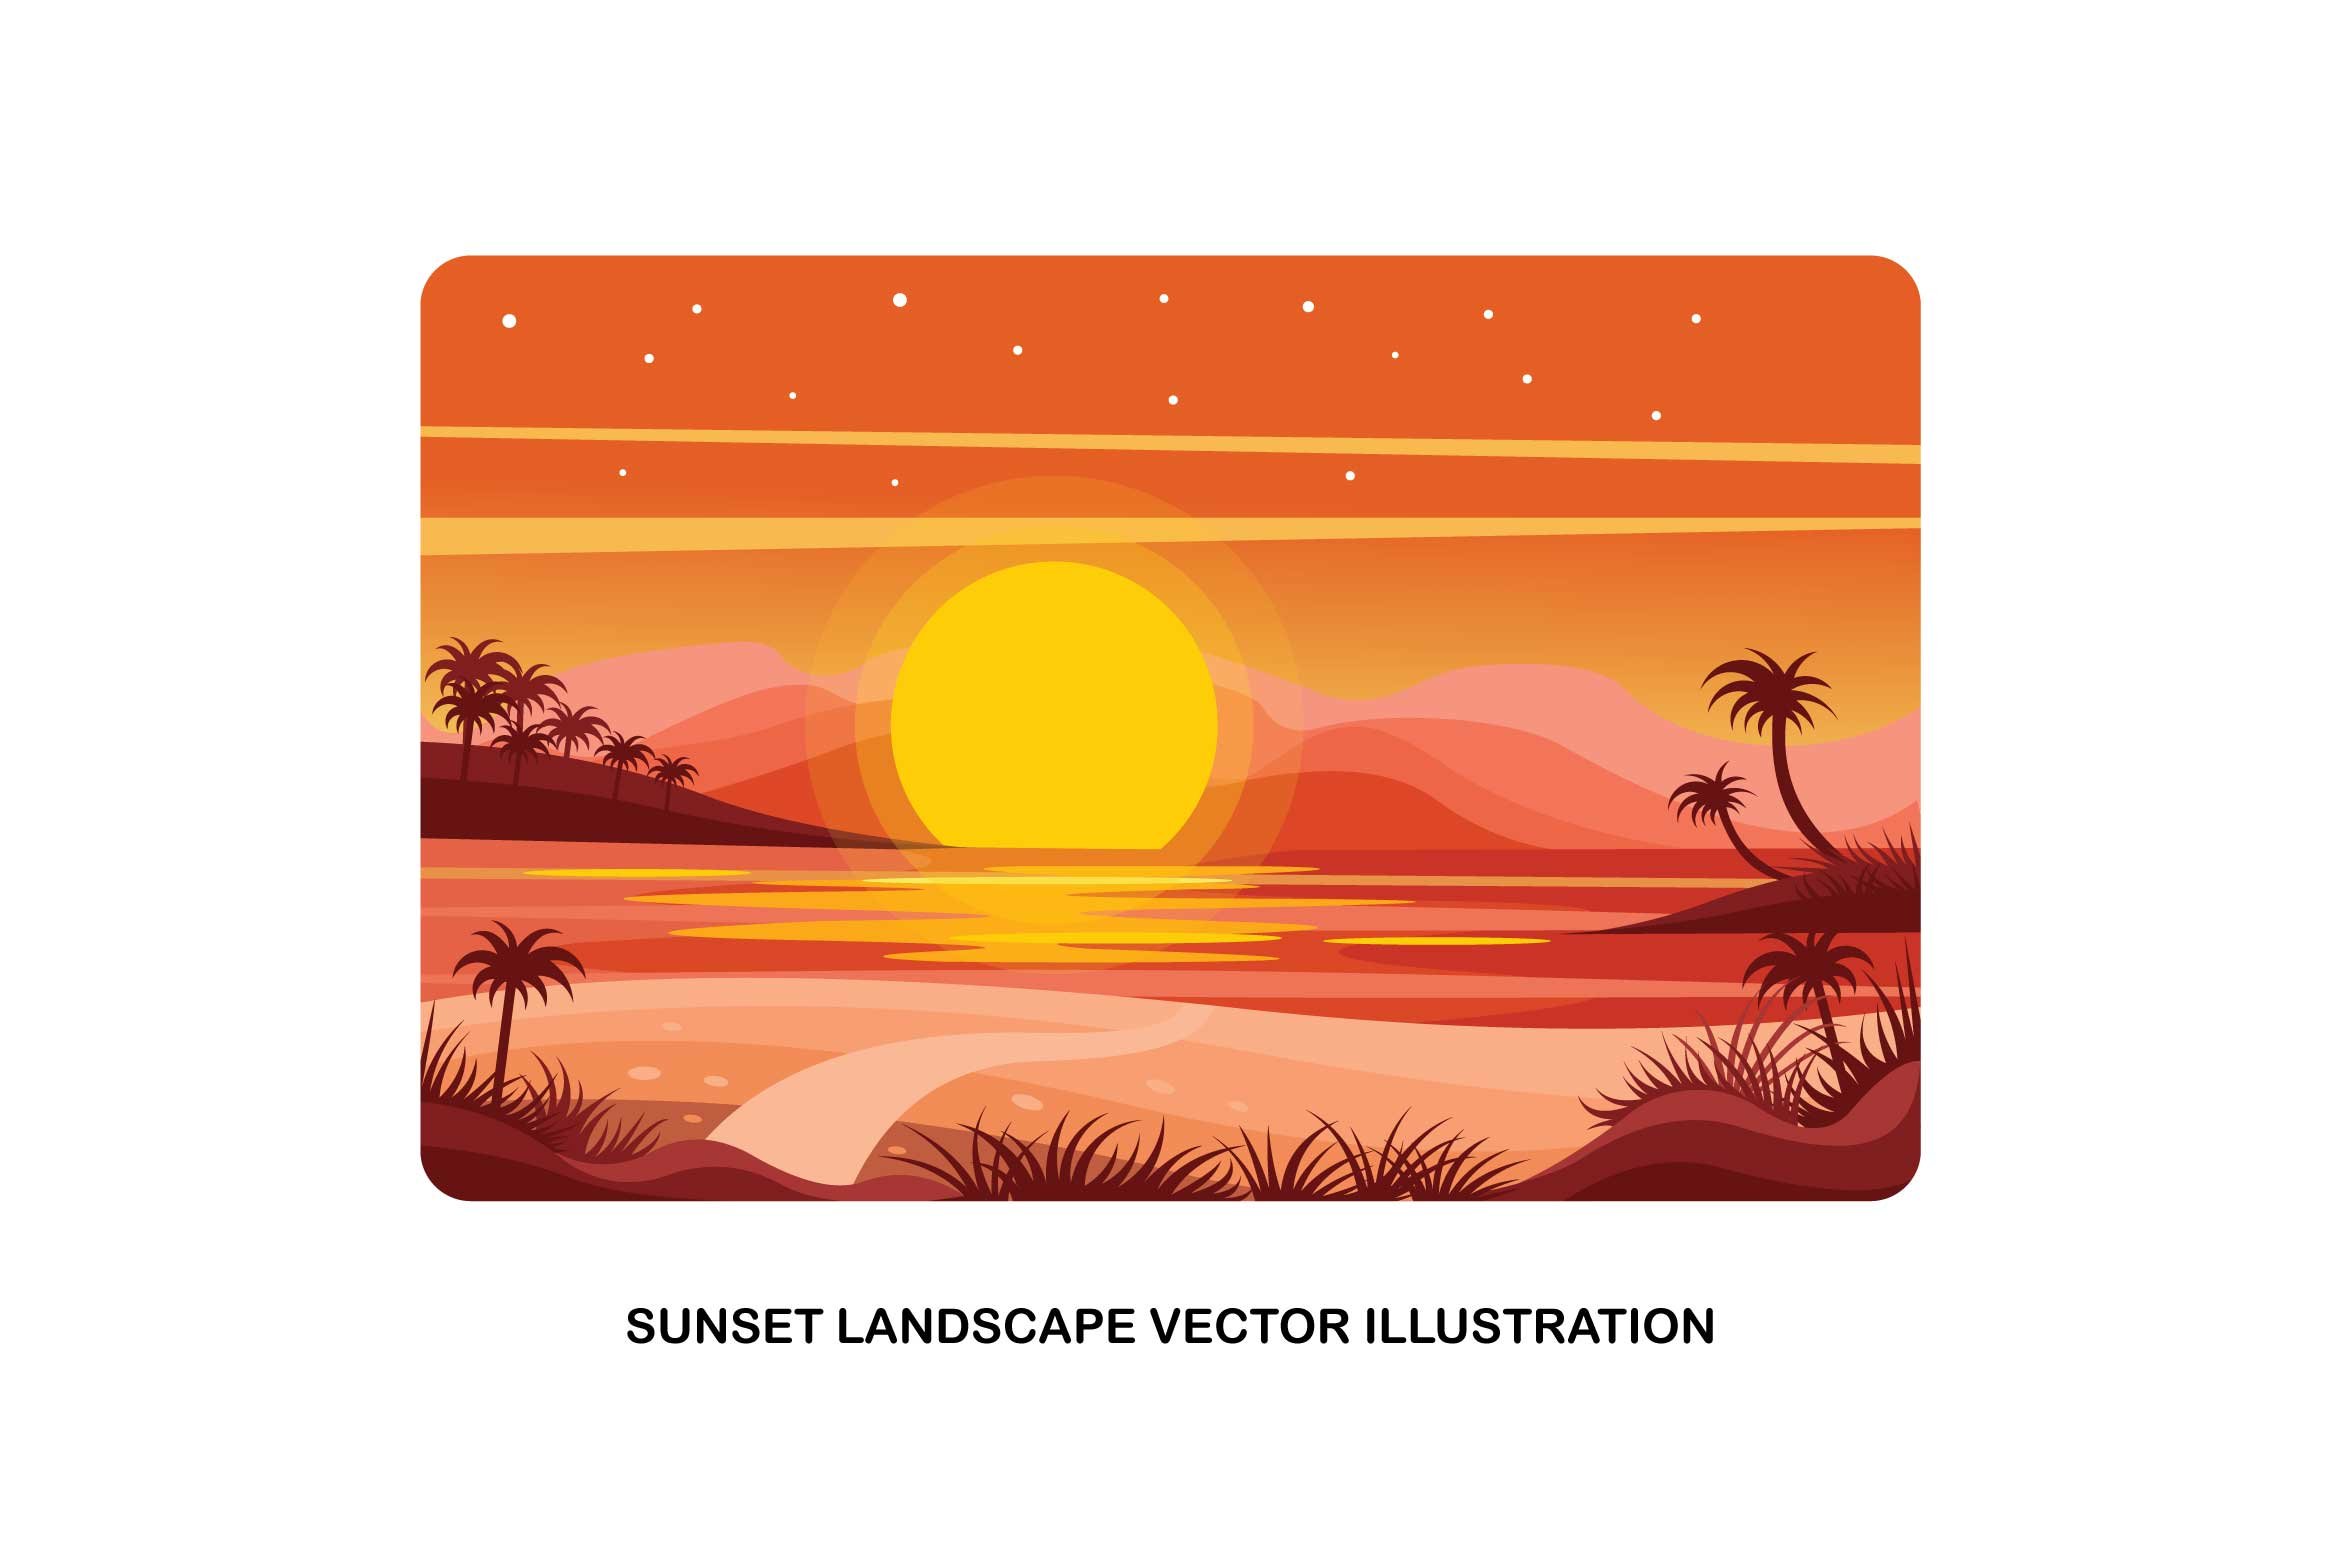 Sunset Landscape Vector Illustration cover image.